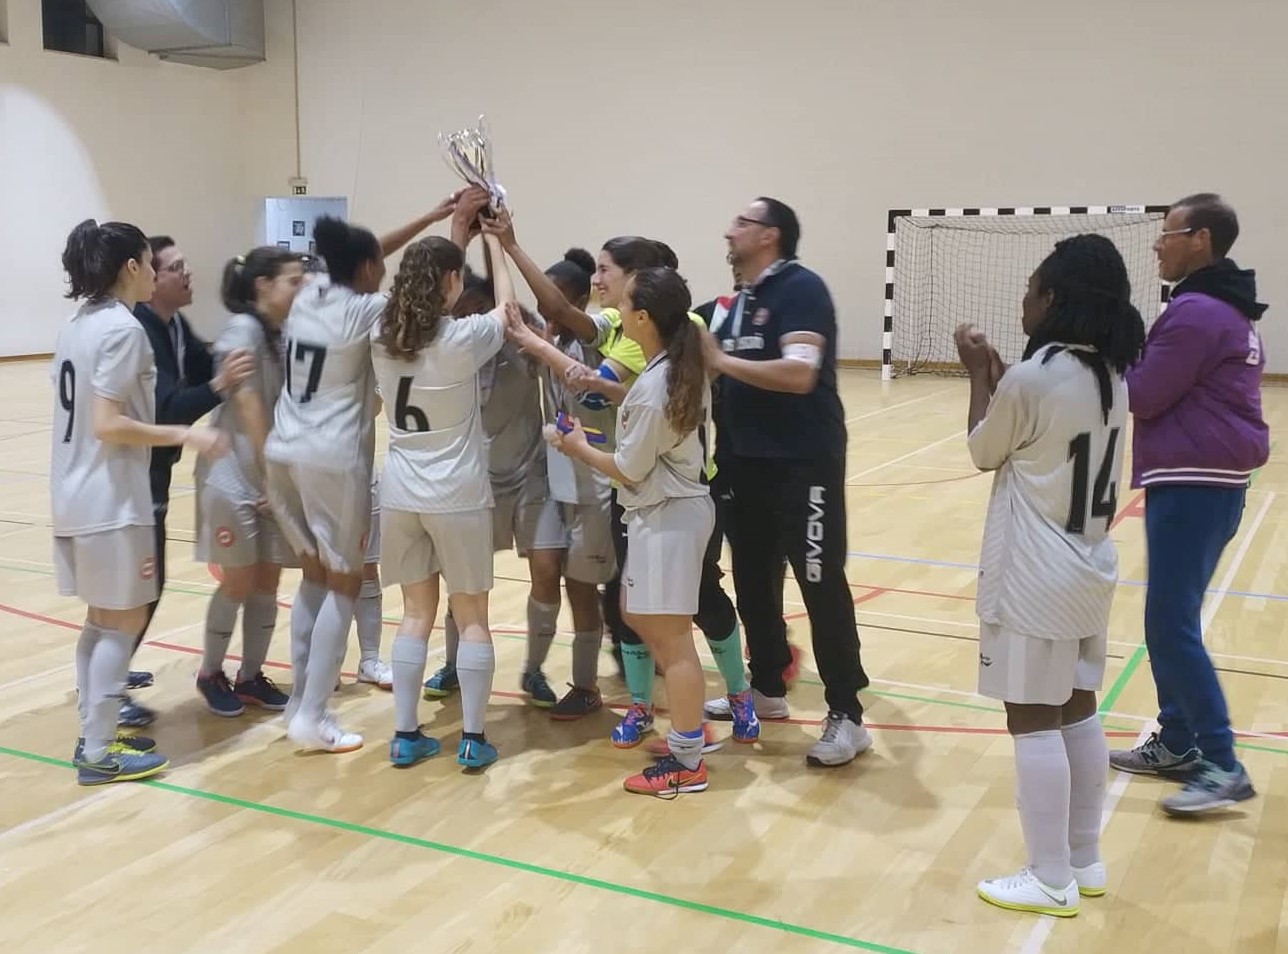 Futsal Feijó ergueu a Supertaça AFS de futsal feminino